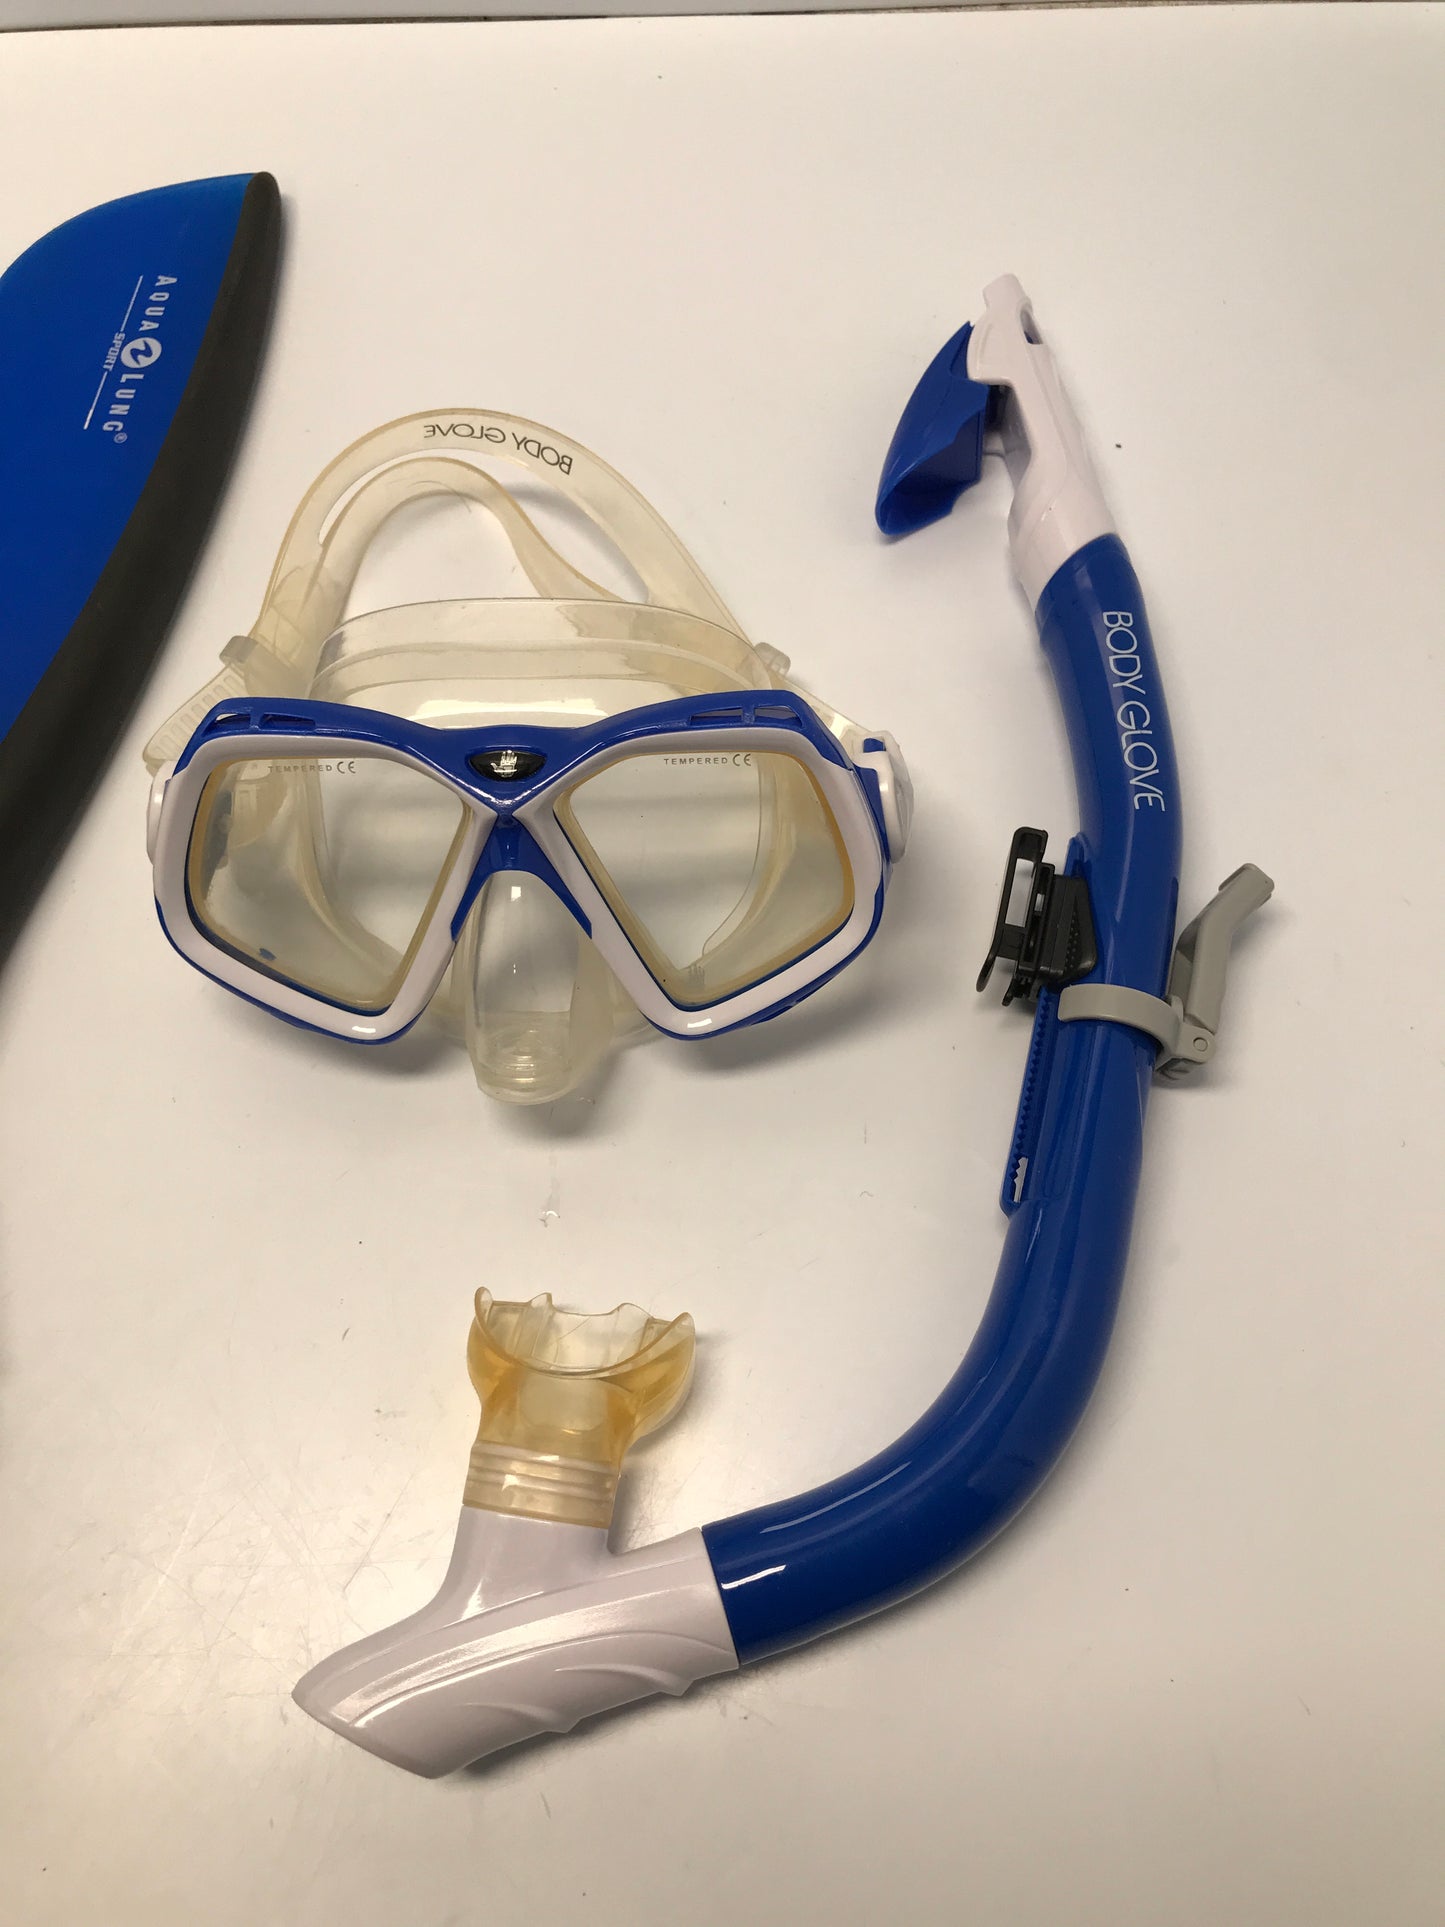 Snorkel Dive Swim Fins Set Child Size 1-4 Adjustable Body Glove Aqua Lung Blue Black Excellent